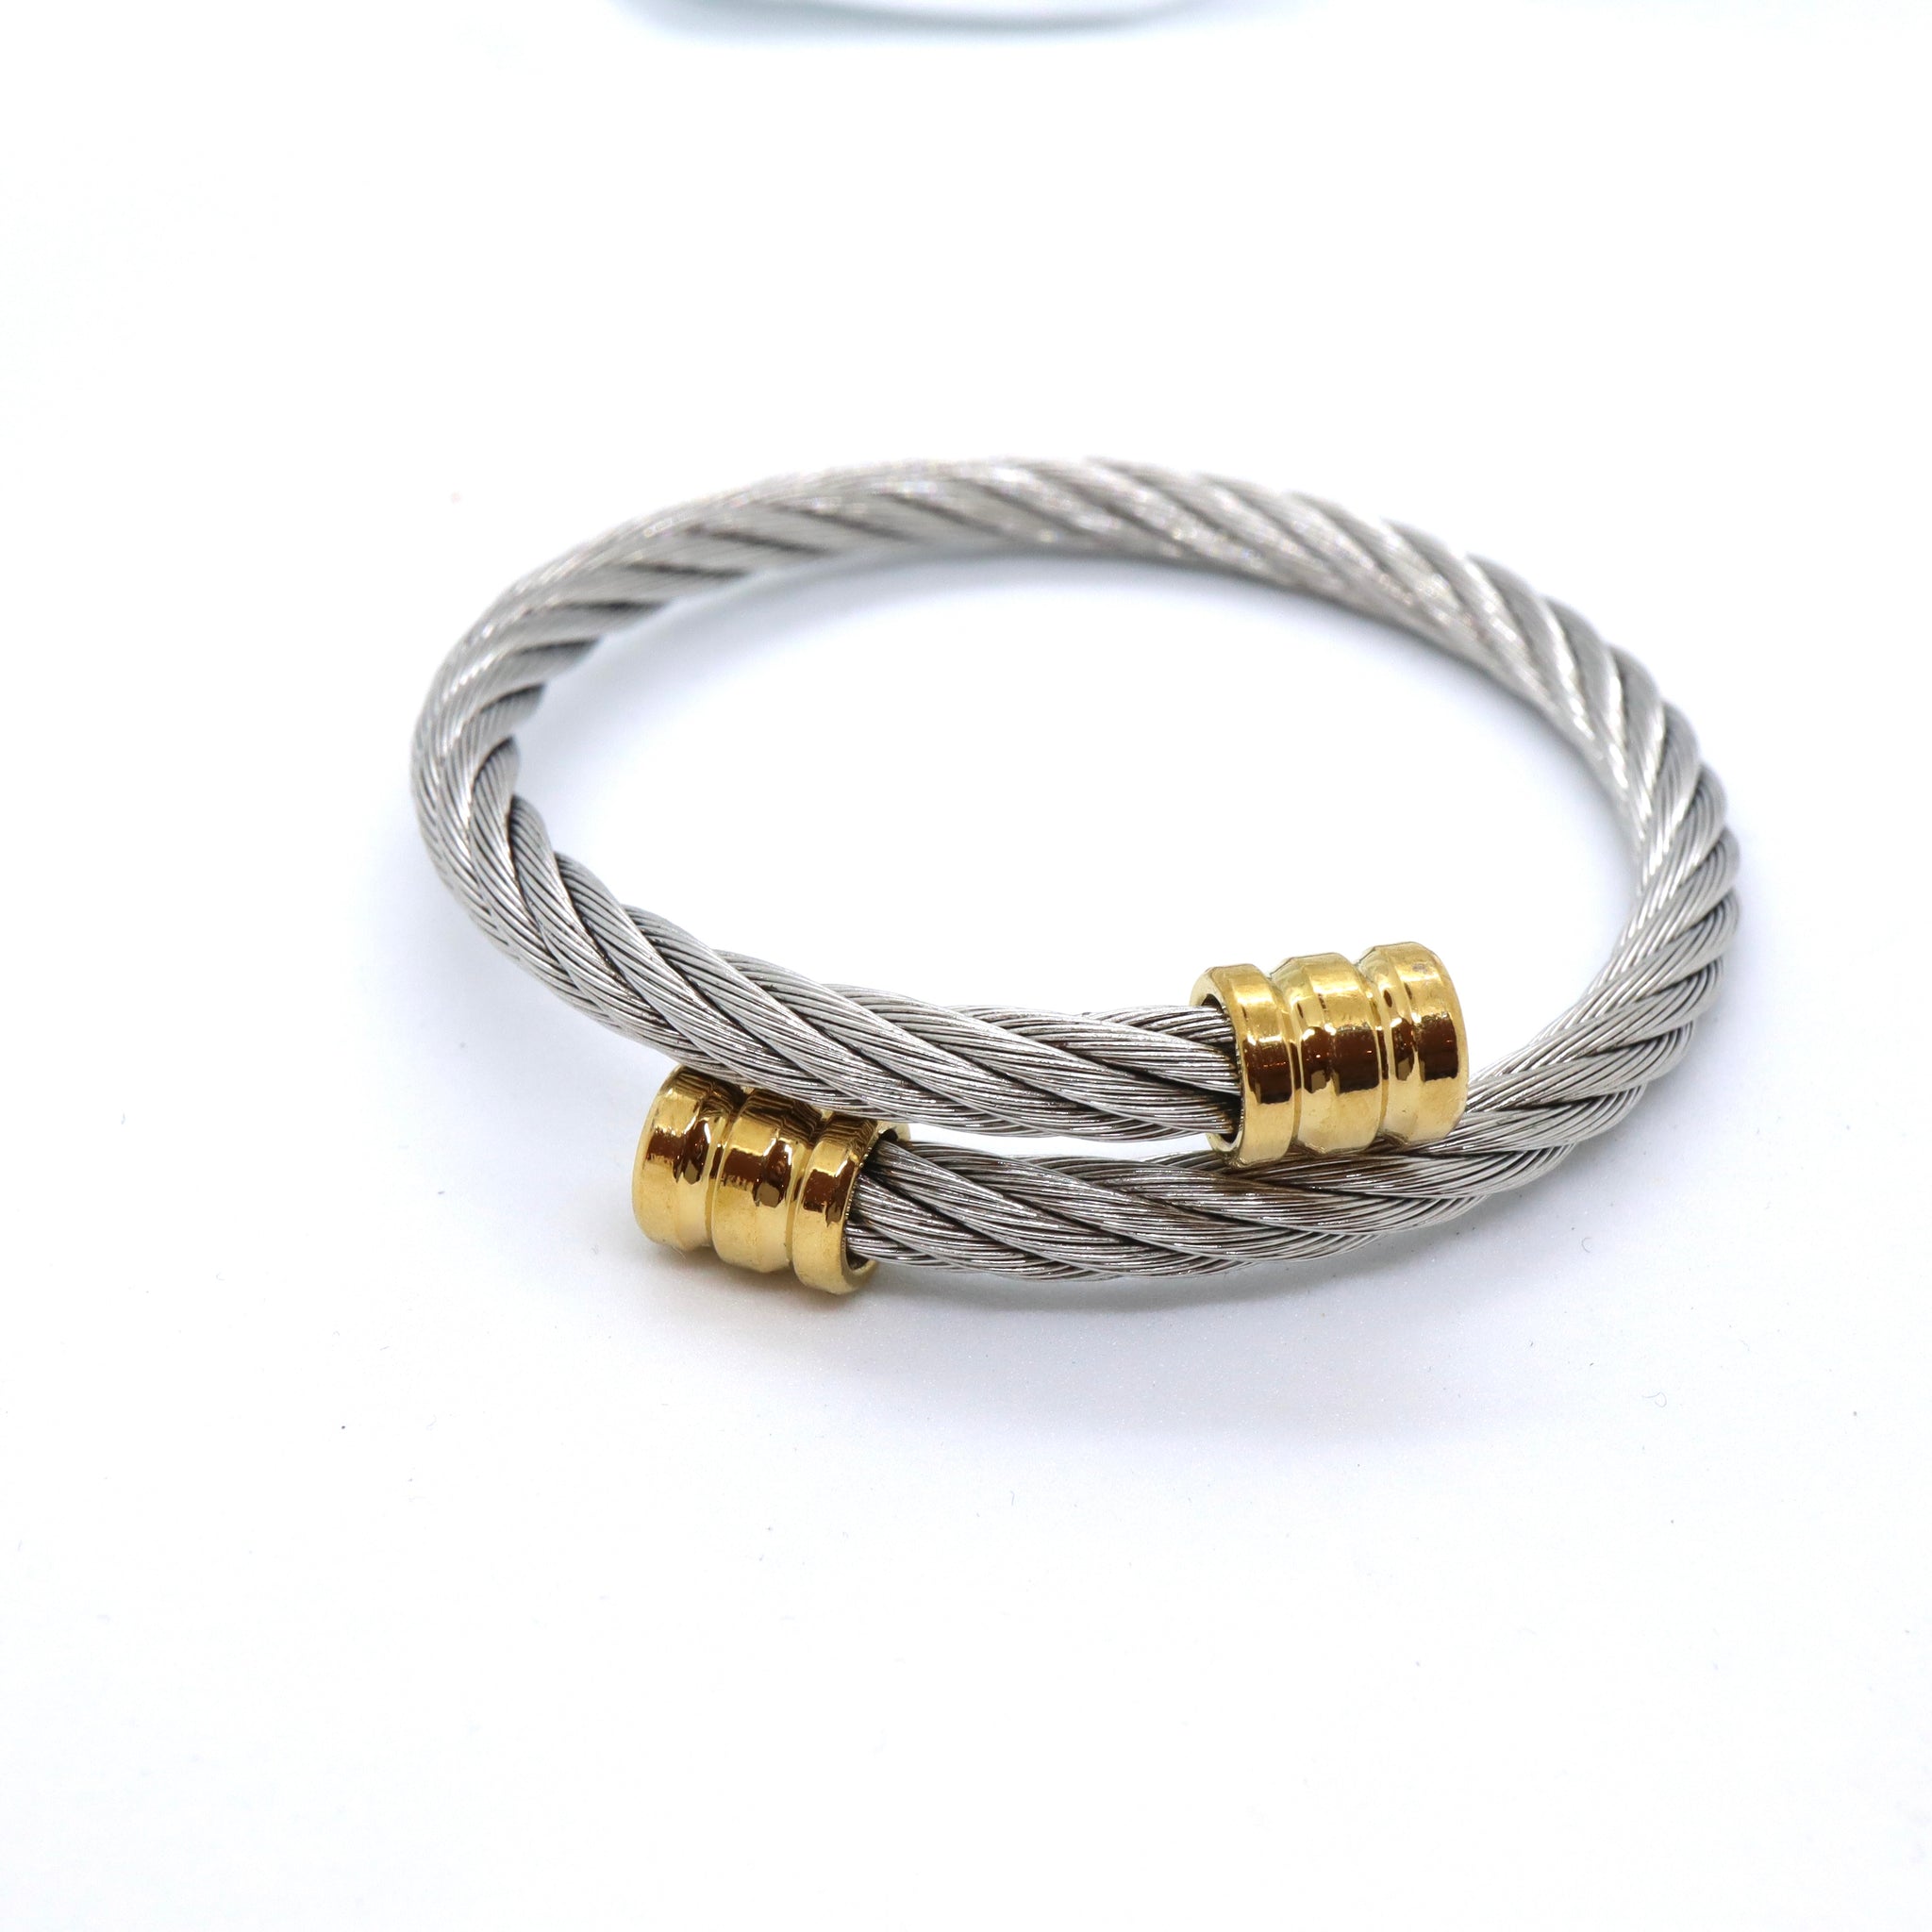 Golden Cable Bracelet- Adjustable Bangle - 18K Goldplated